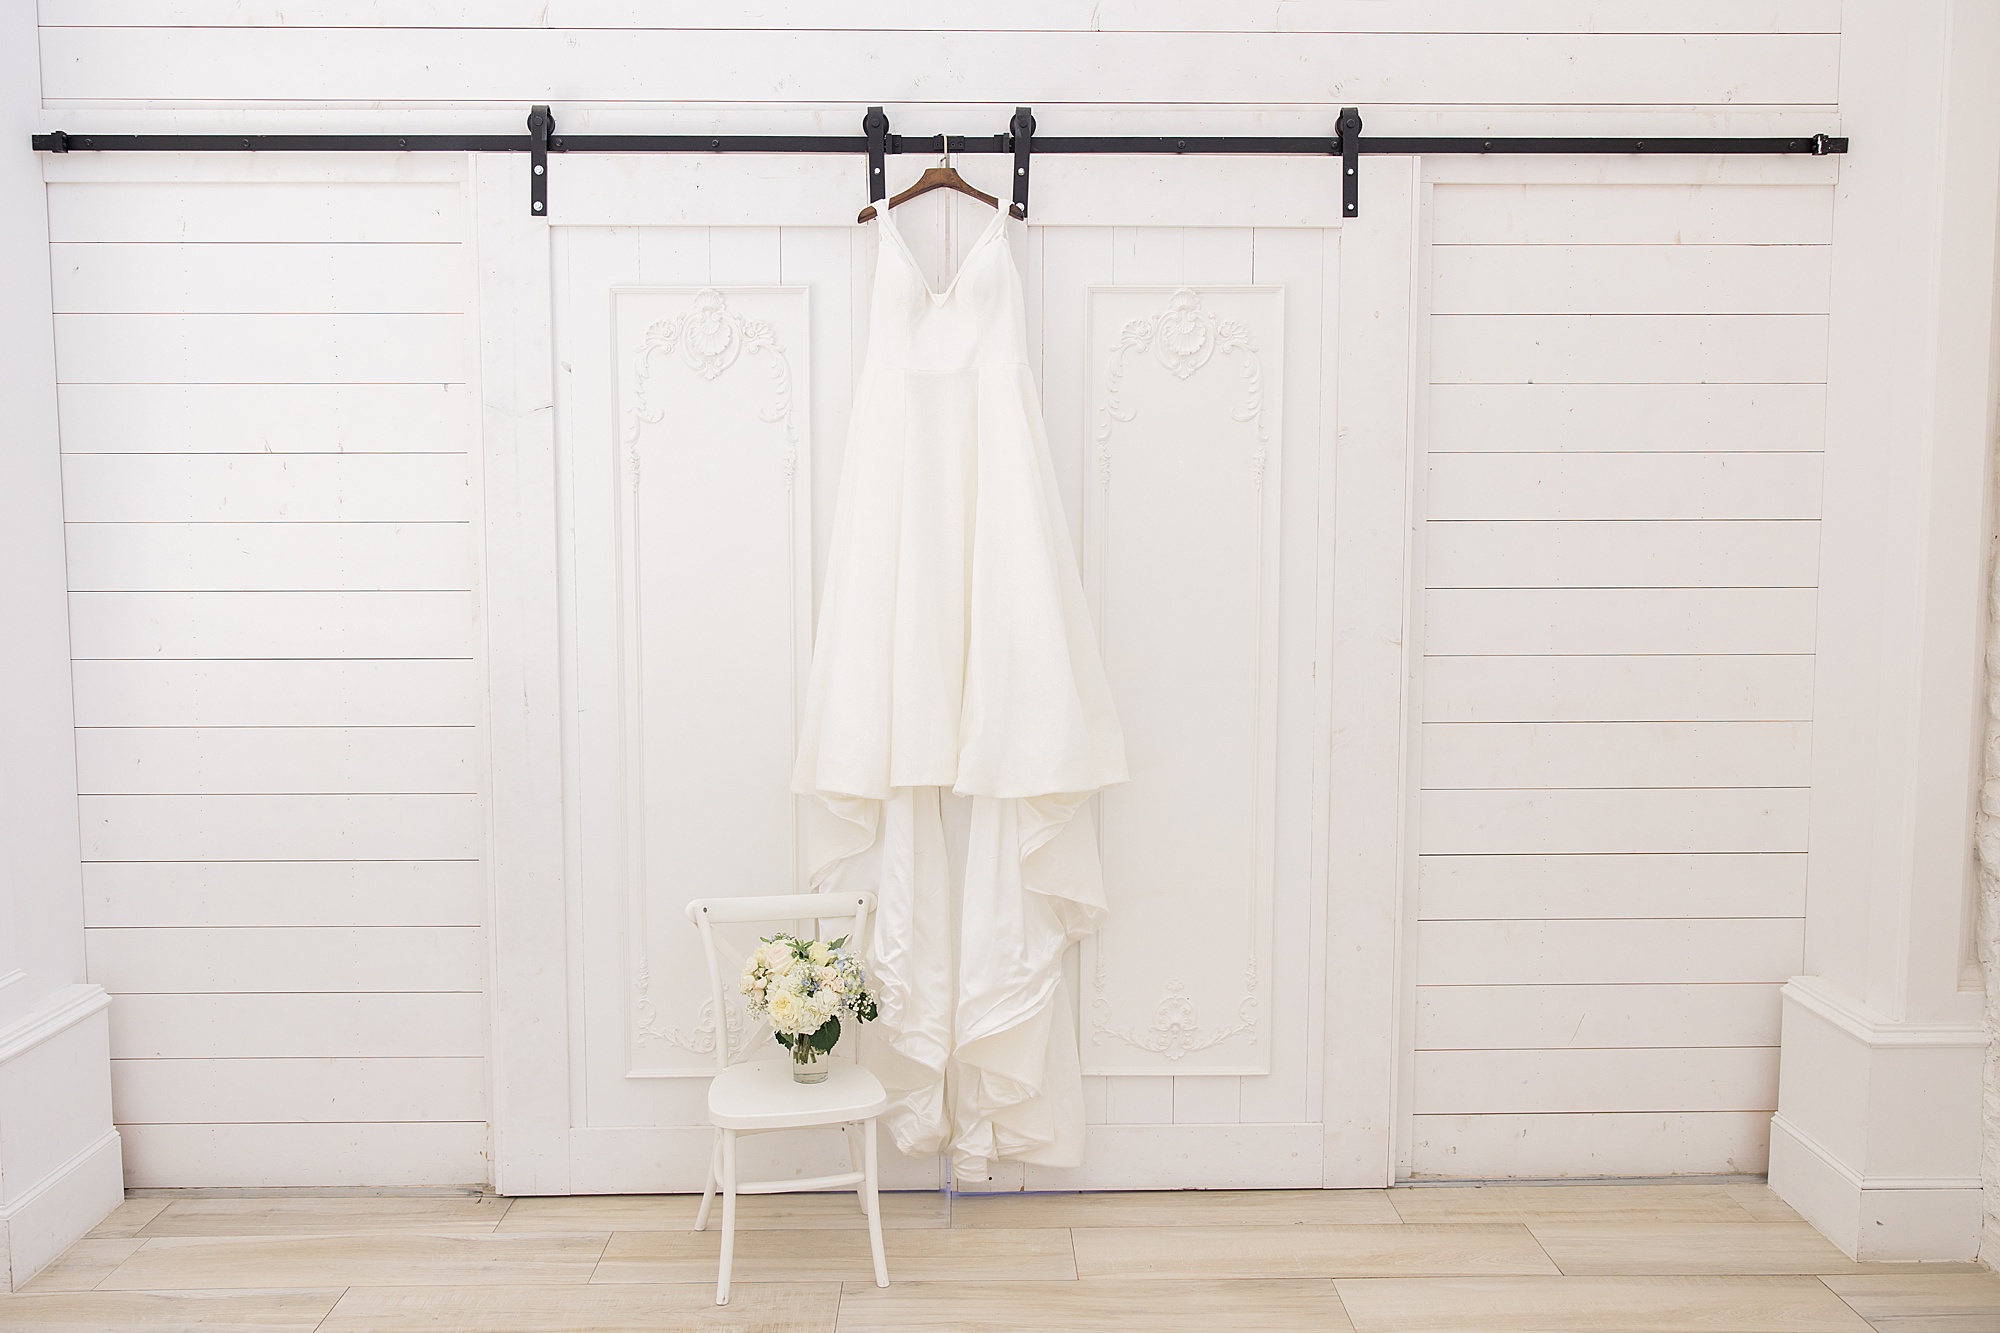 bride's dress hangs on door before